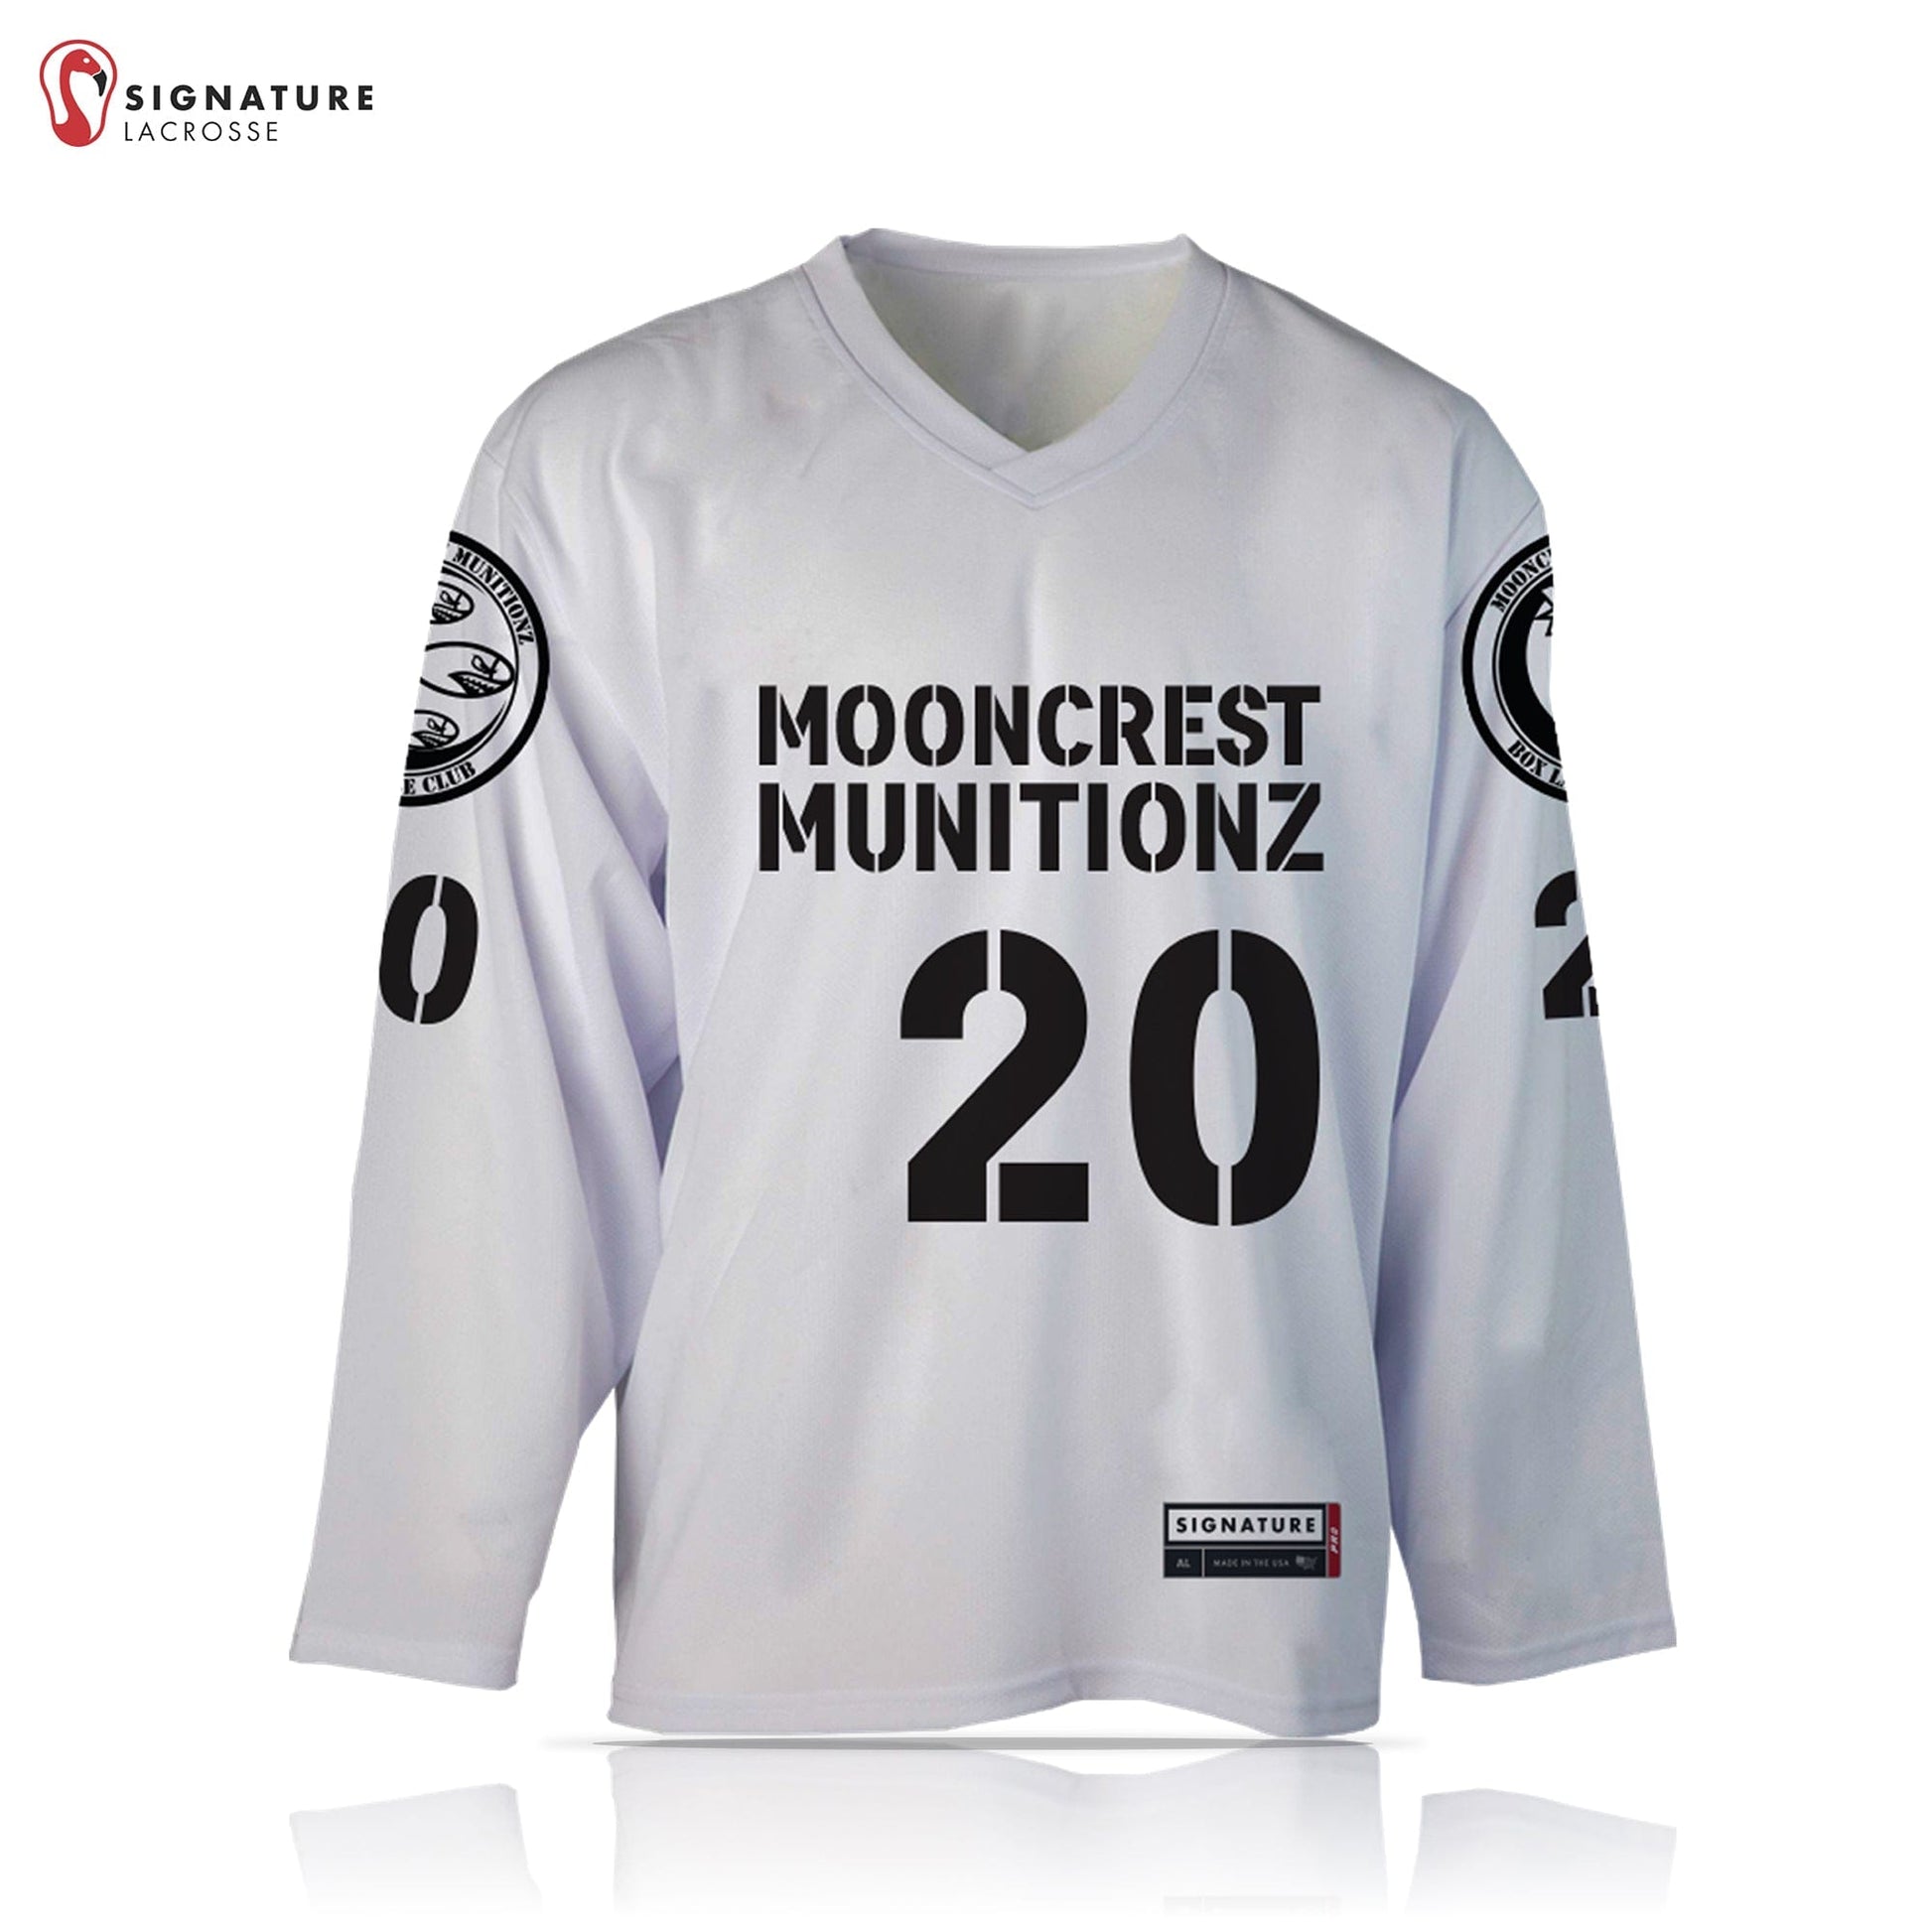 Mooncrest Munitionz Box Lacrosse Men’s 2 Piece White Pro Box Jersey Package: N/A Signature Lacrosse